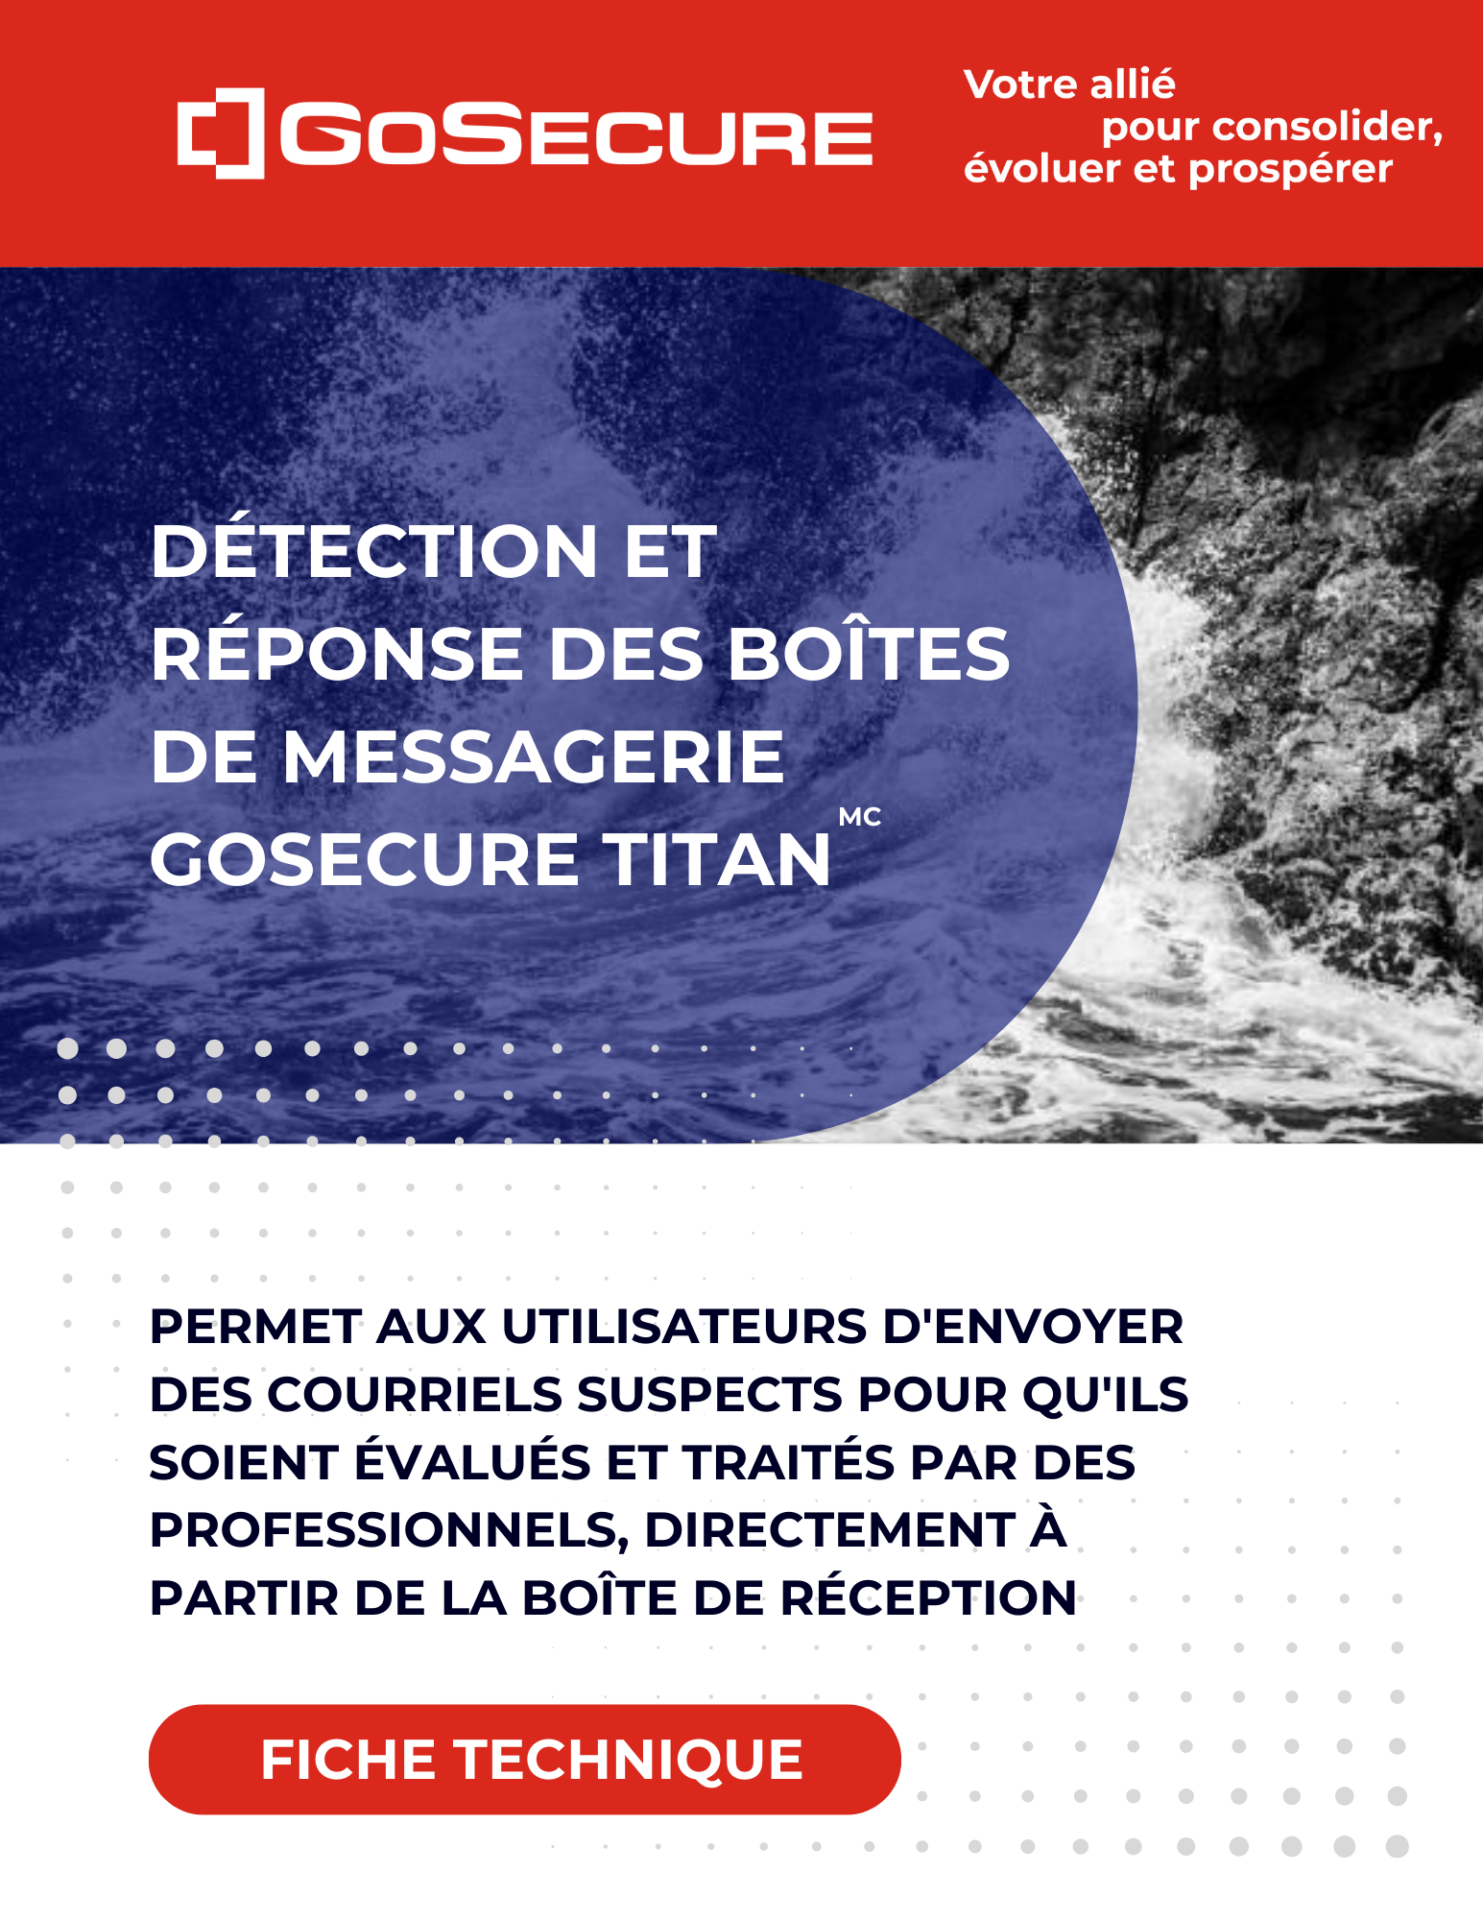 Image de couverture-Fiche Technique-Détection et réponse des boîtes de messagerie GoSecure Titan